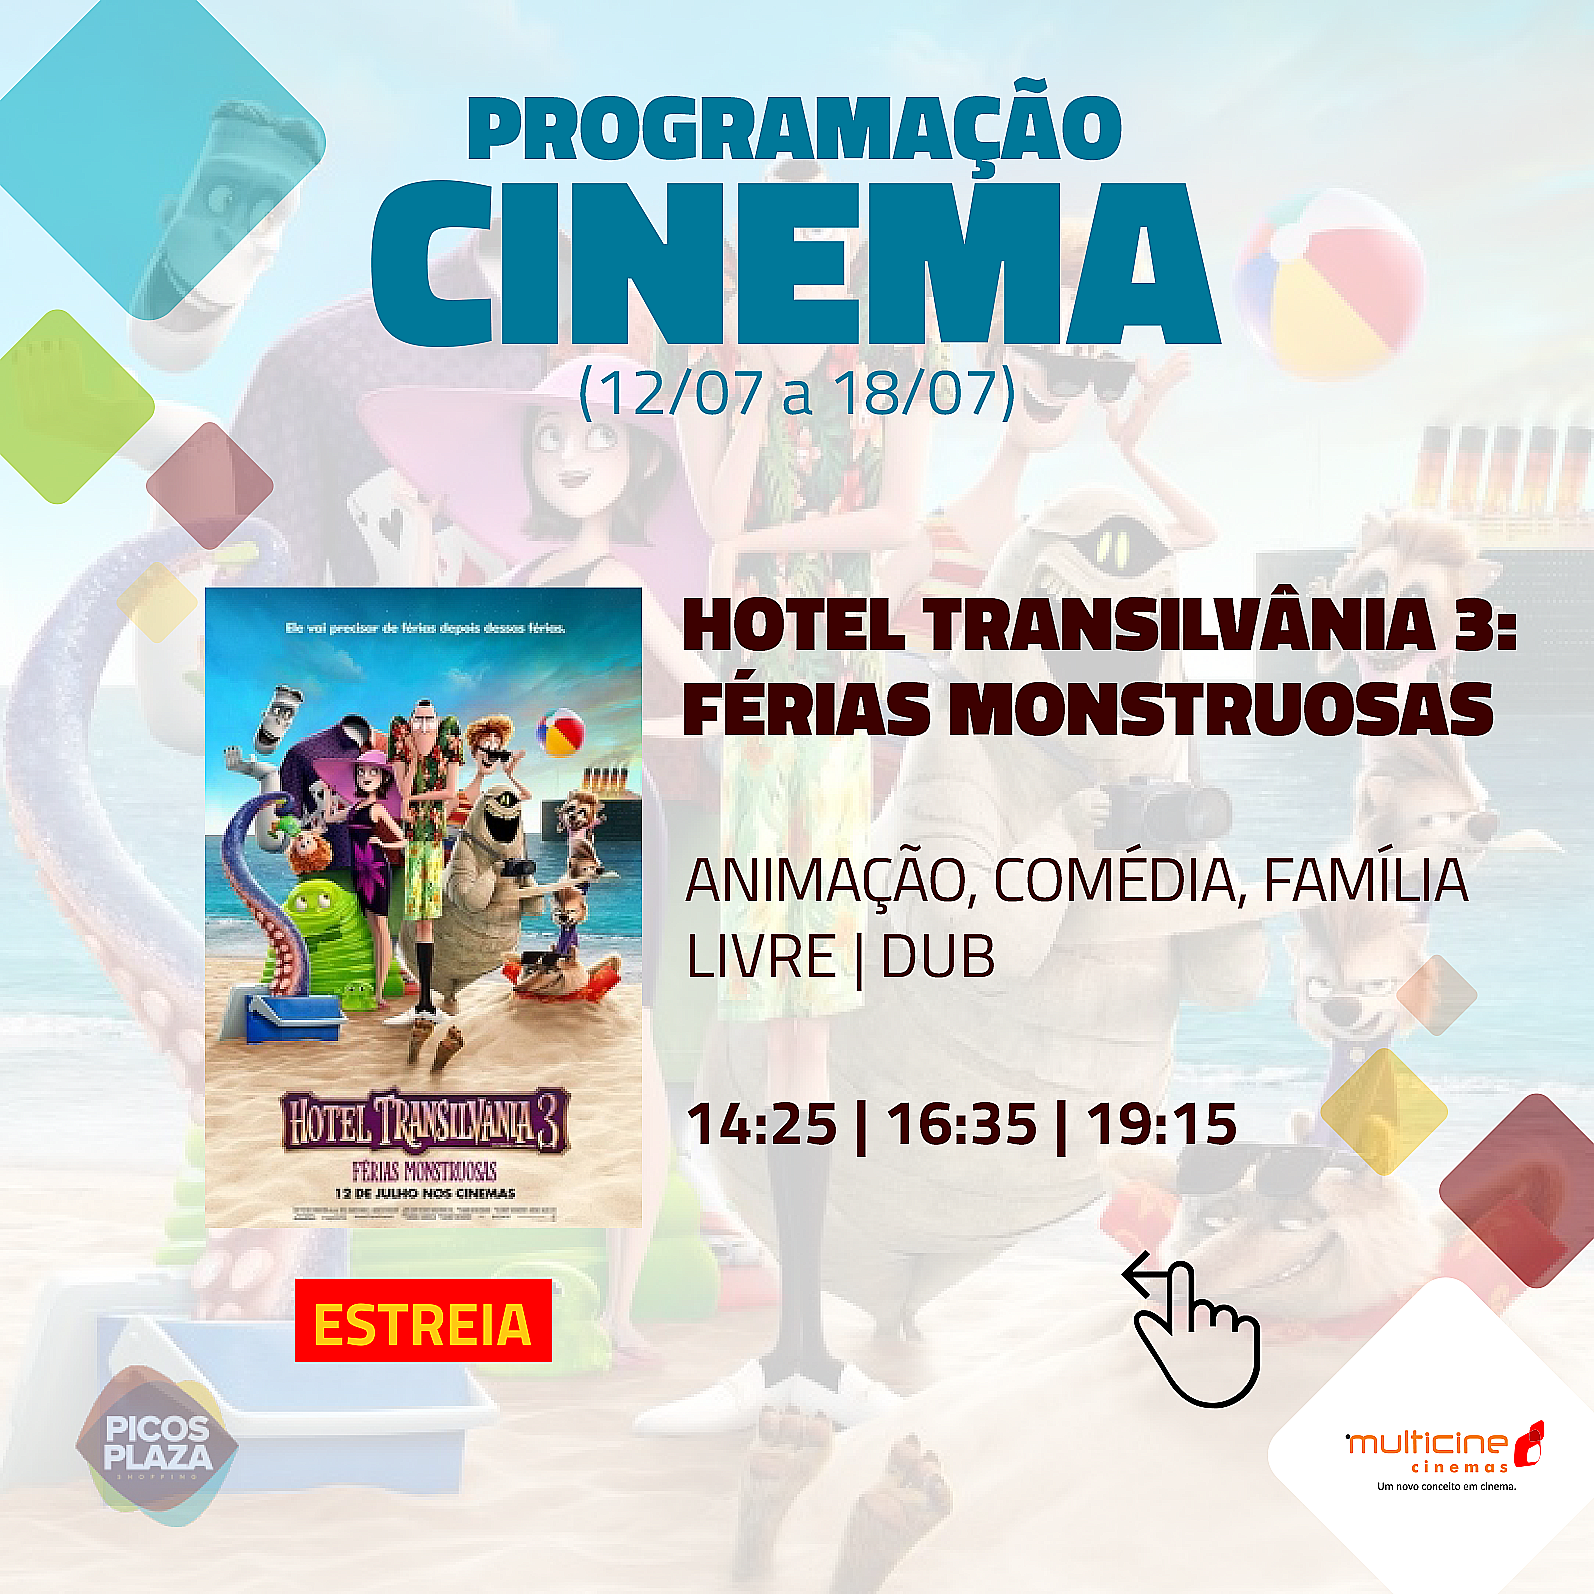 ‘Hotel Transilvânia 3’ e ‘Arranha-Céu’ estreiam hoje no cinema do Picos Plaza Shopping